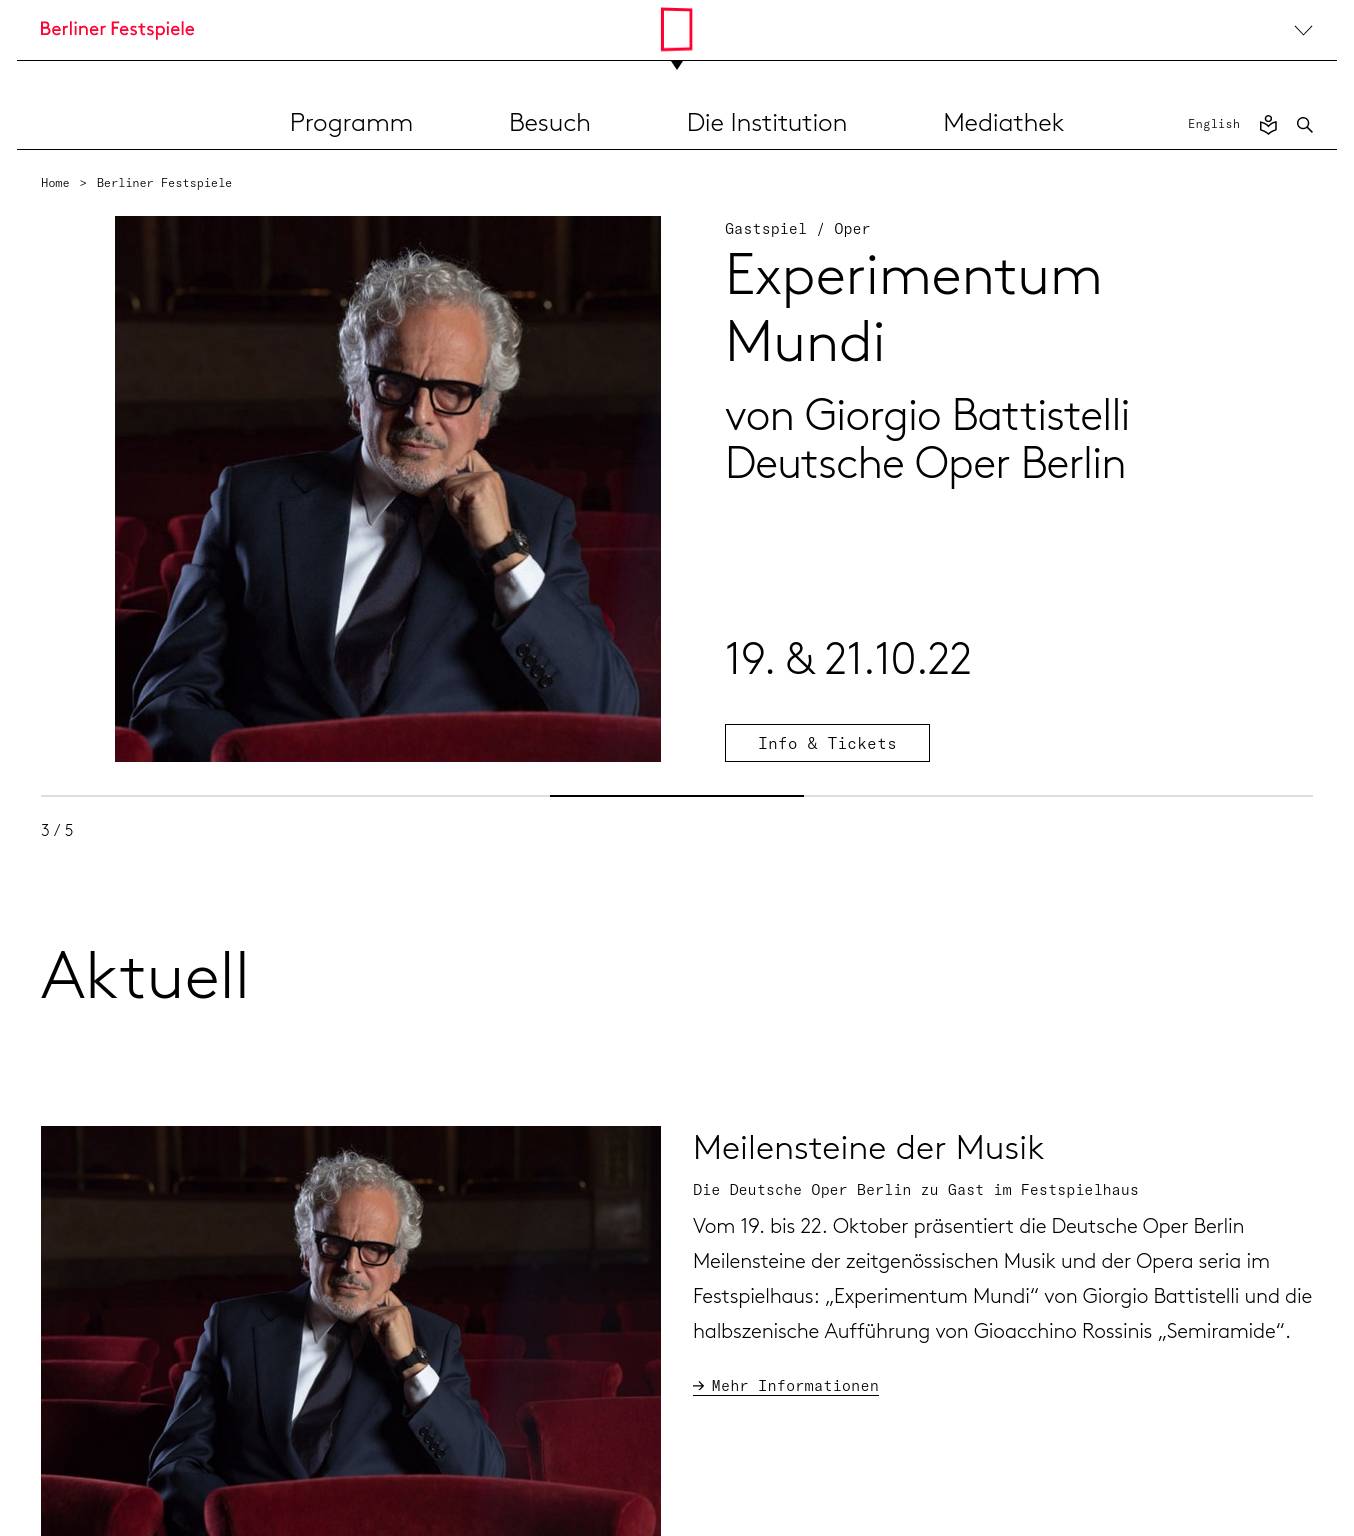 Large screenshot of Berliner Festspiele